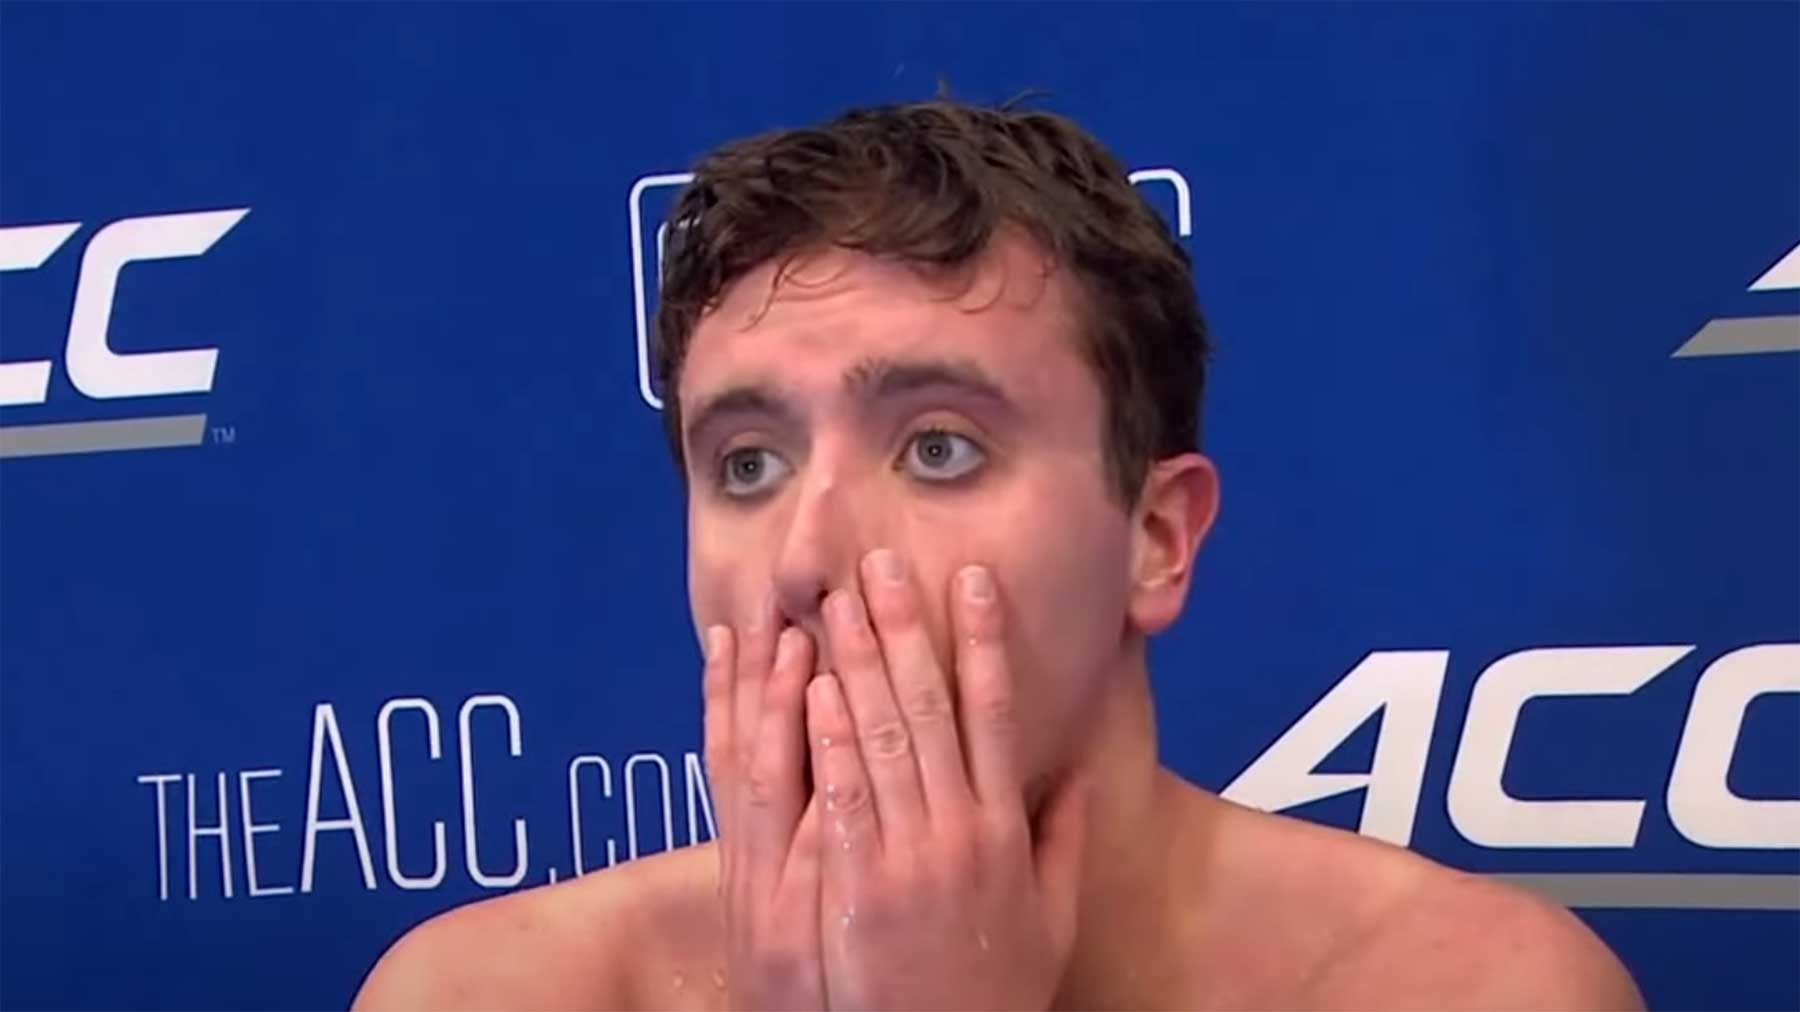 Schwimmer gewinnt & wird wegen seines Jubels disqualifiziert schwimmer-wegen-jubel-disqualifiziert 